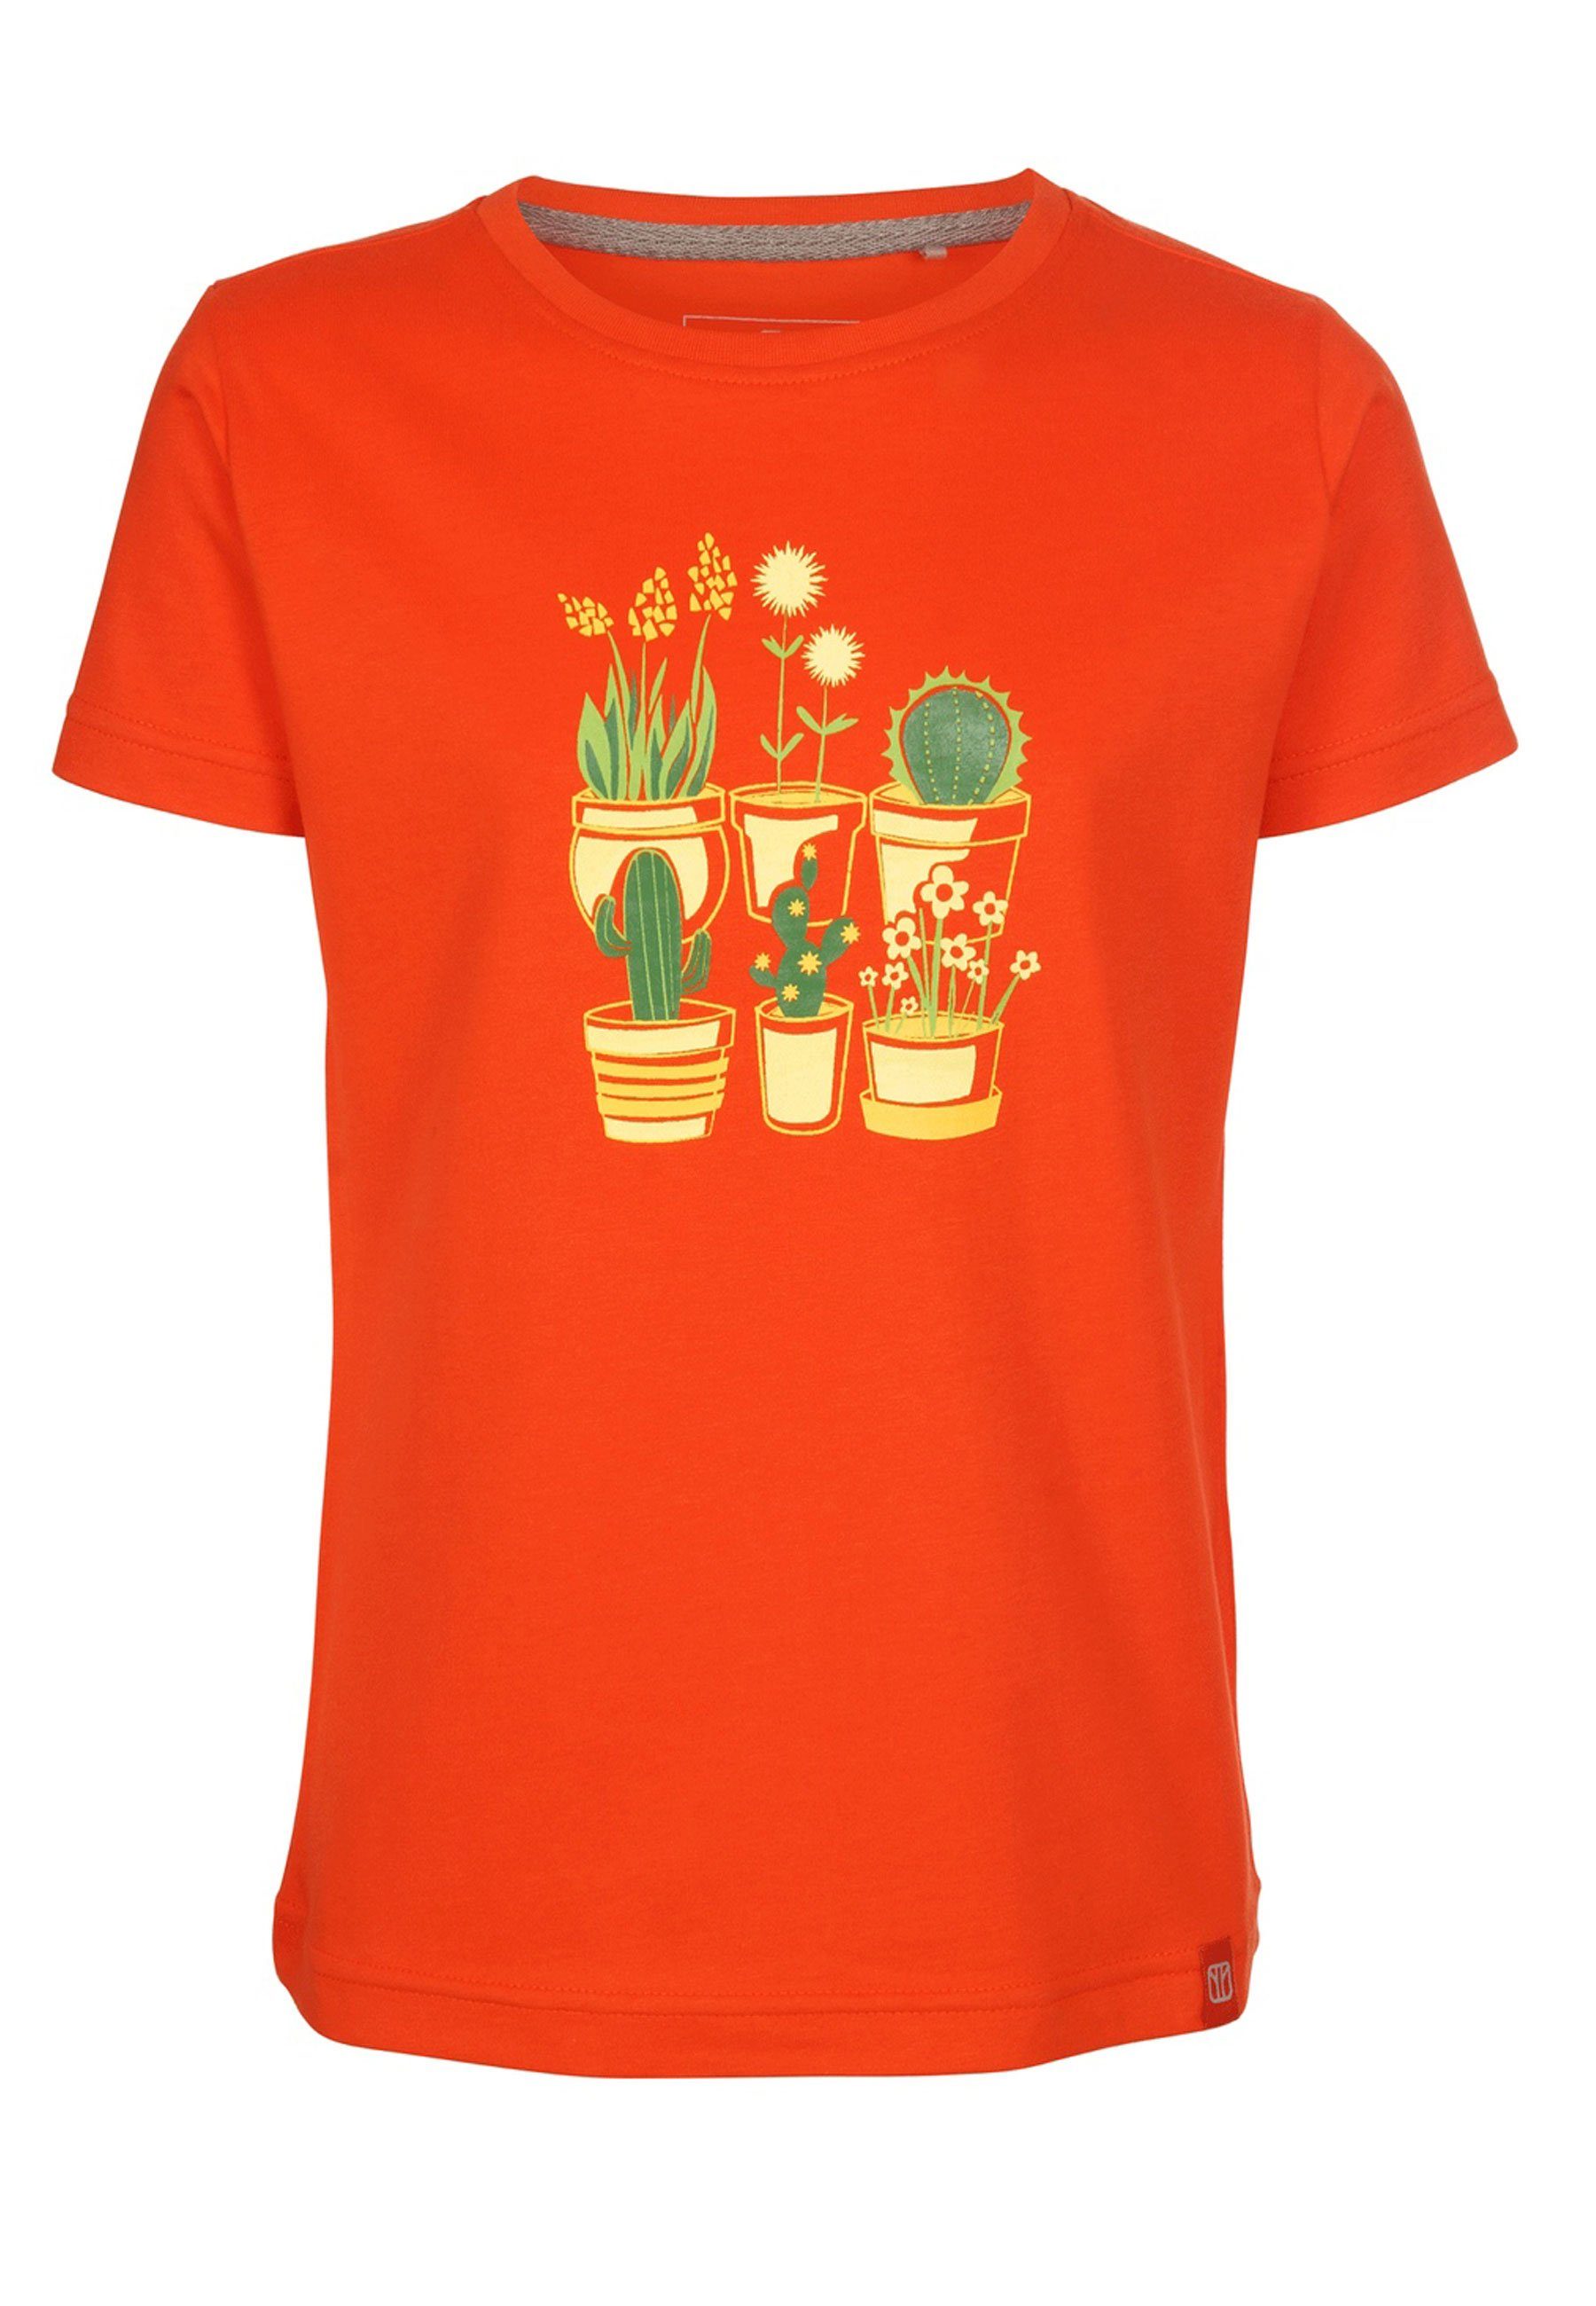 Elkline T-Shirt Plantsarefriends Jersey Kurzarm Blumen Kaktus Brust Print cherrytomato